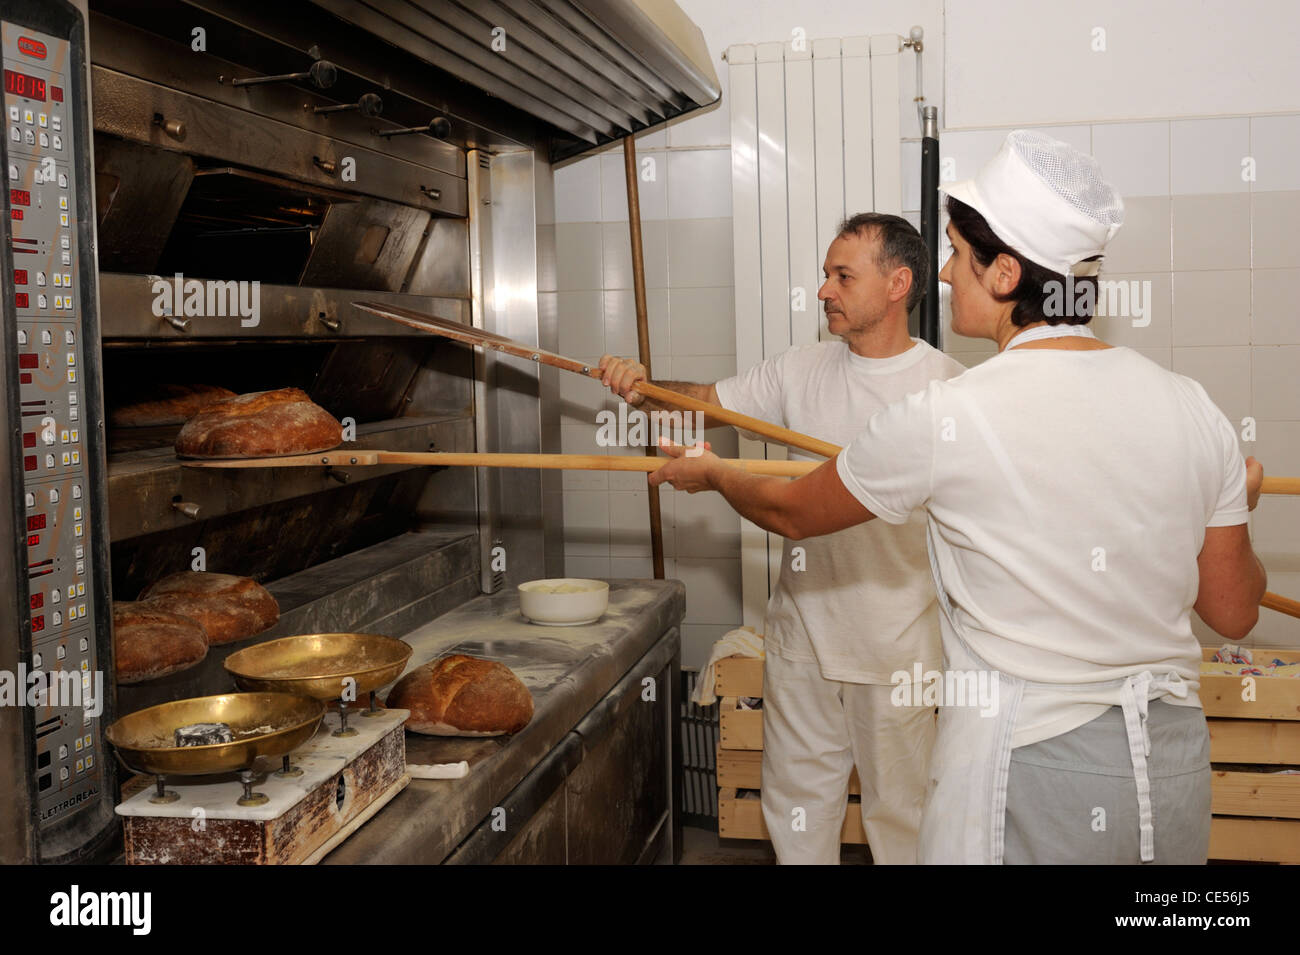 italy, basilicata, bakery, bread oven Stock Photo